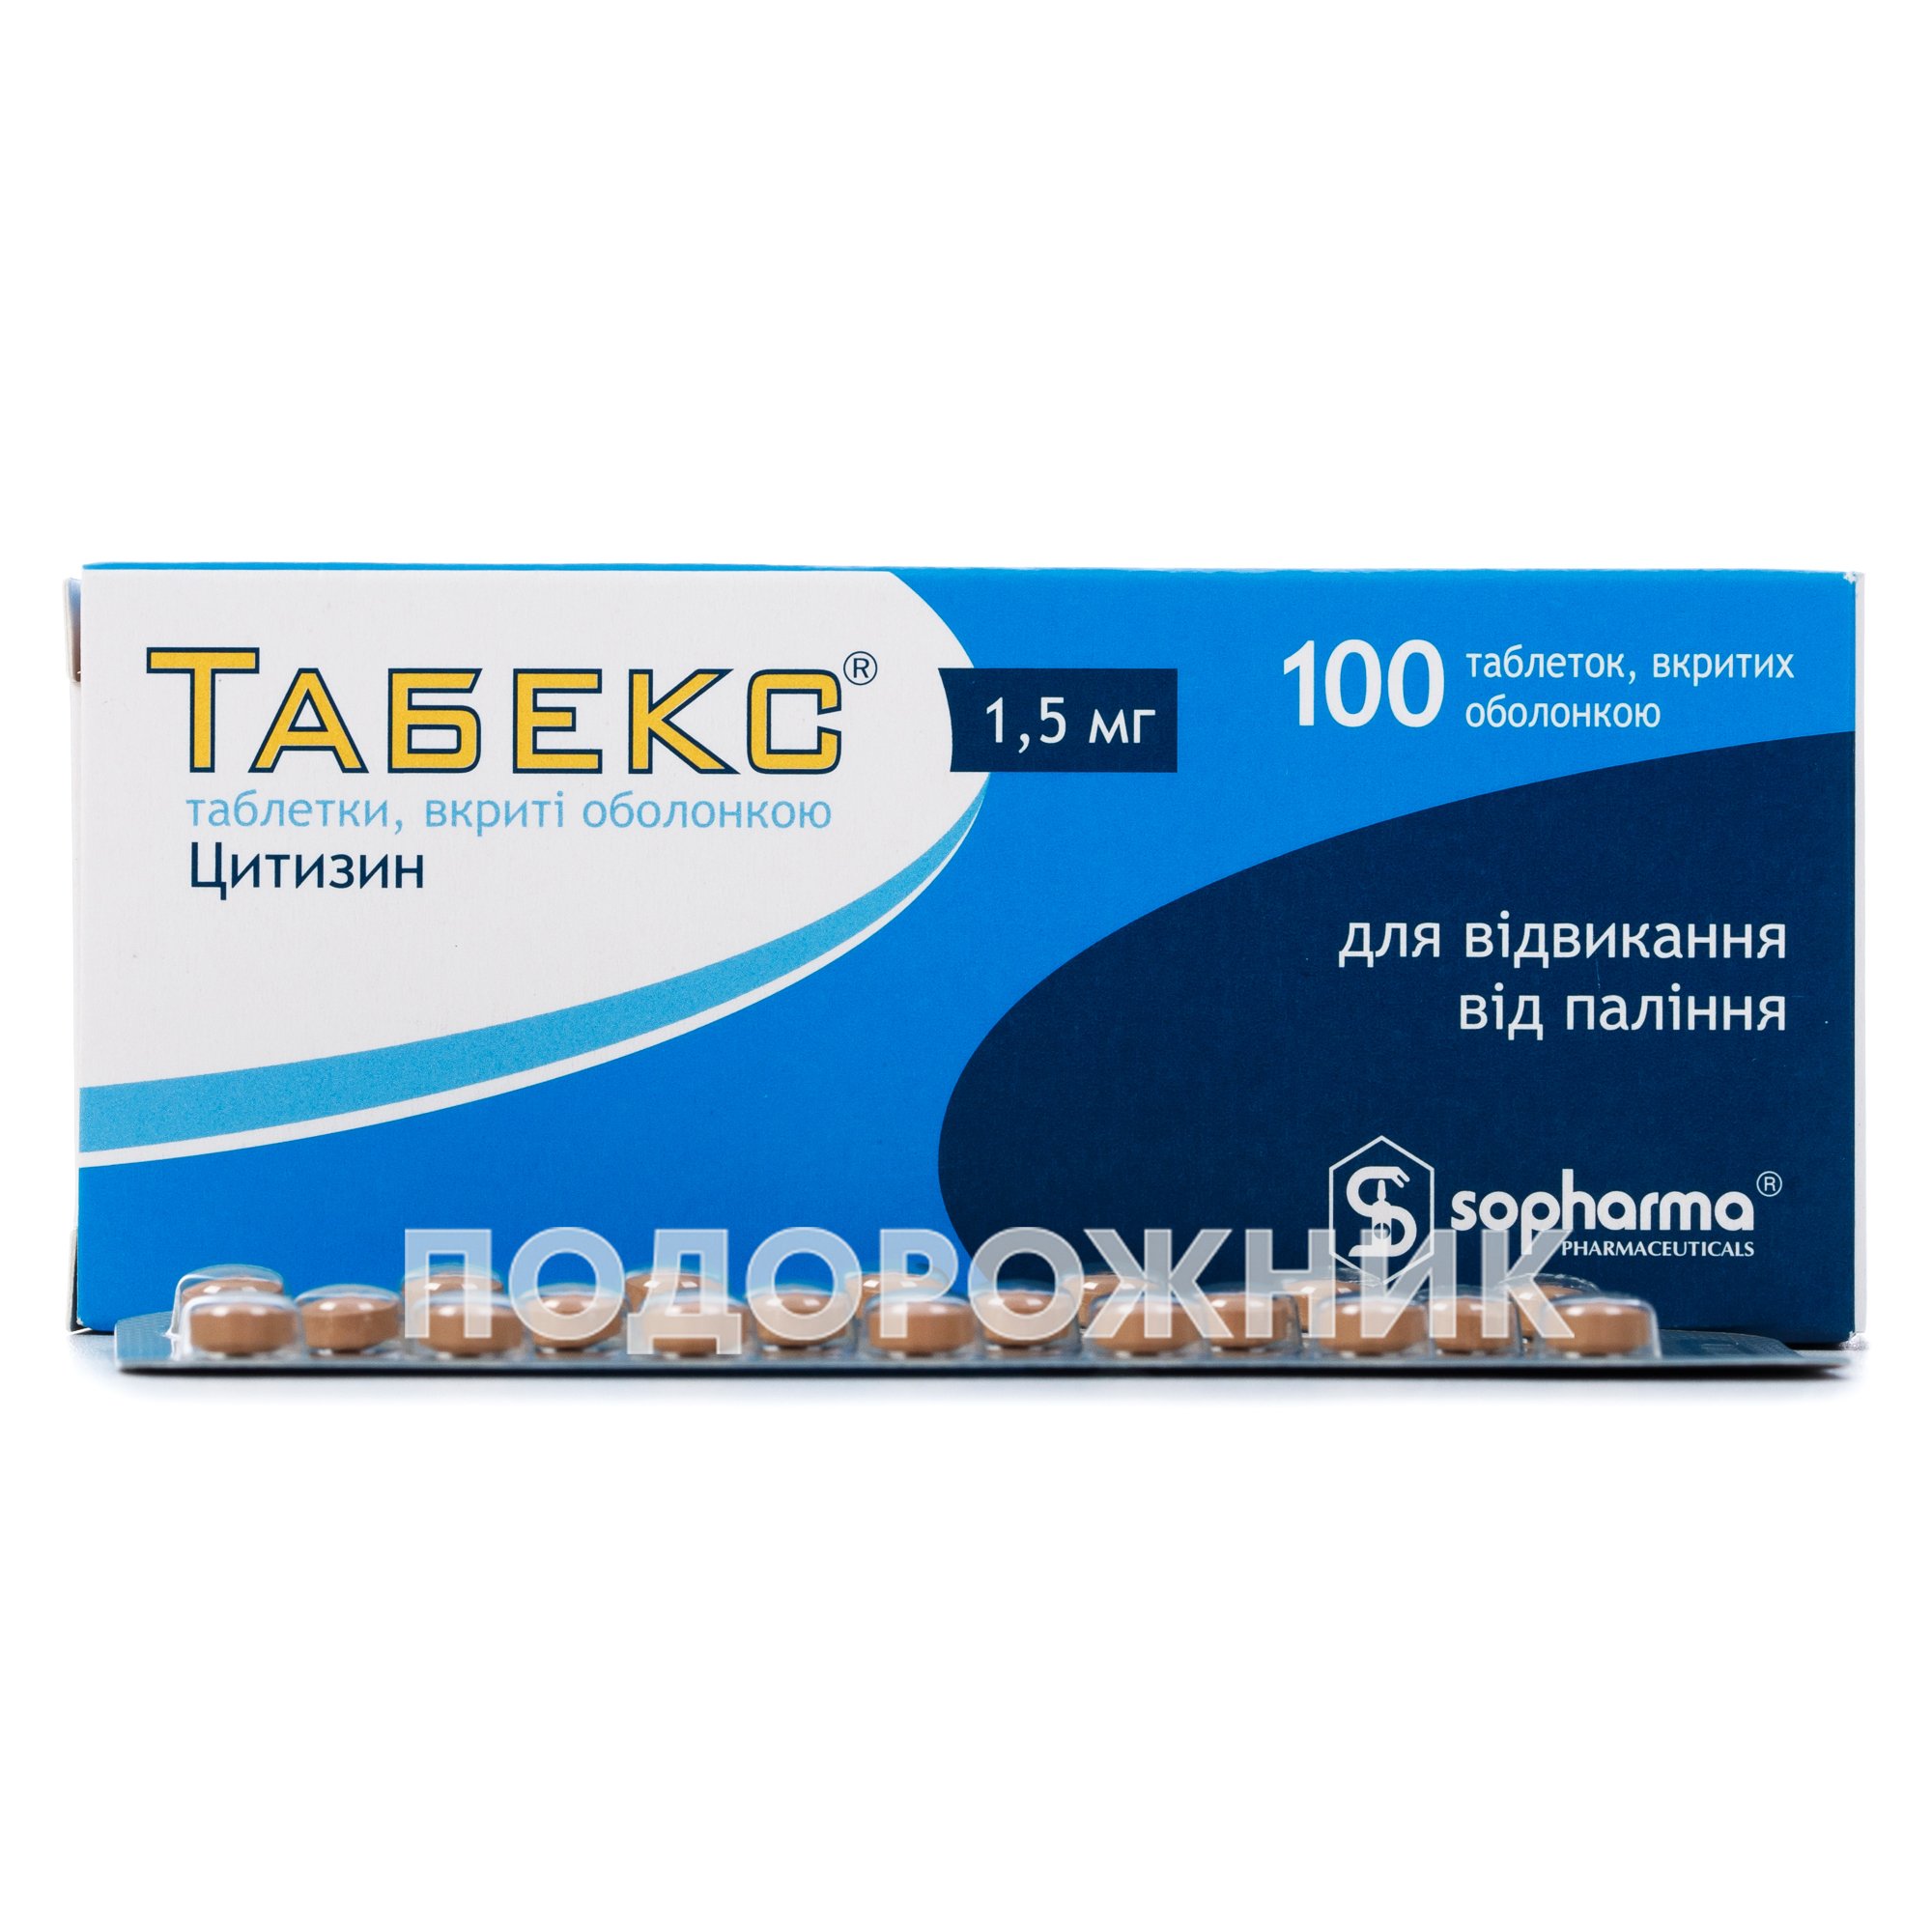 Табекс таблетки по 1,5 мг, 100 шт.: инструкция, цена, отзывы, аналоги .